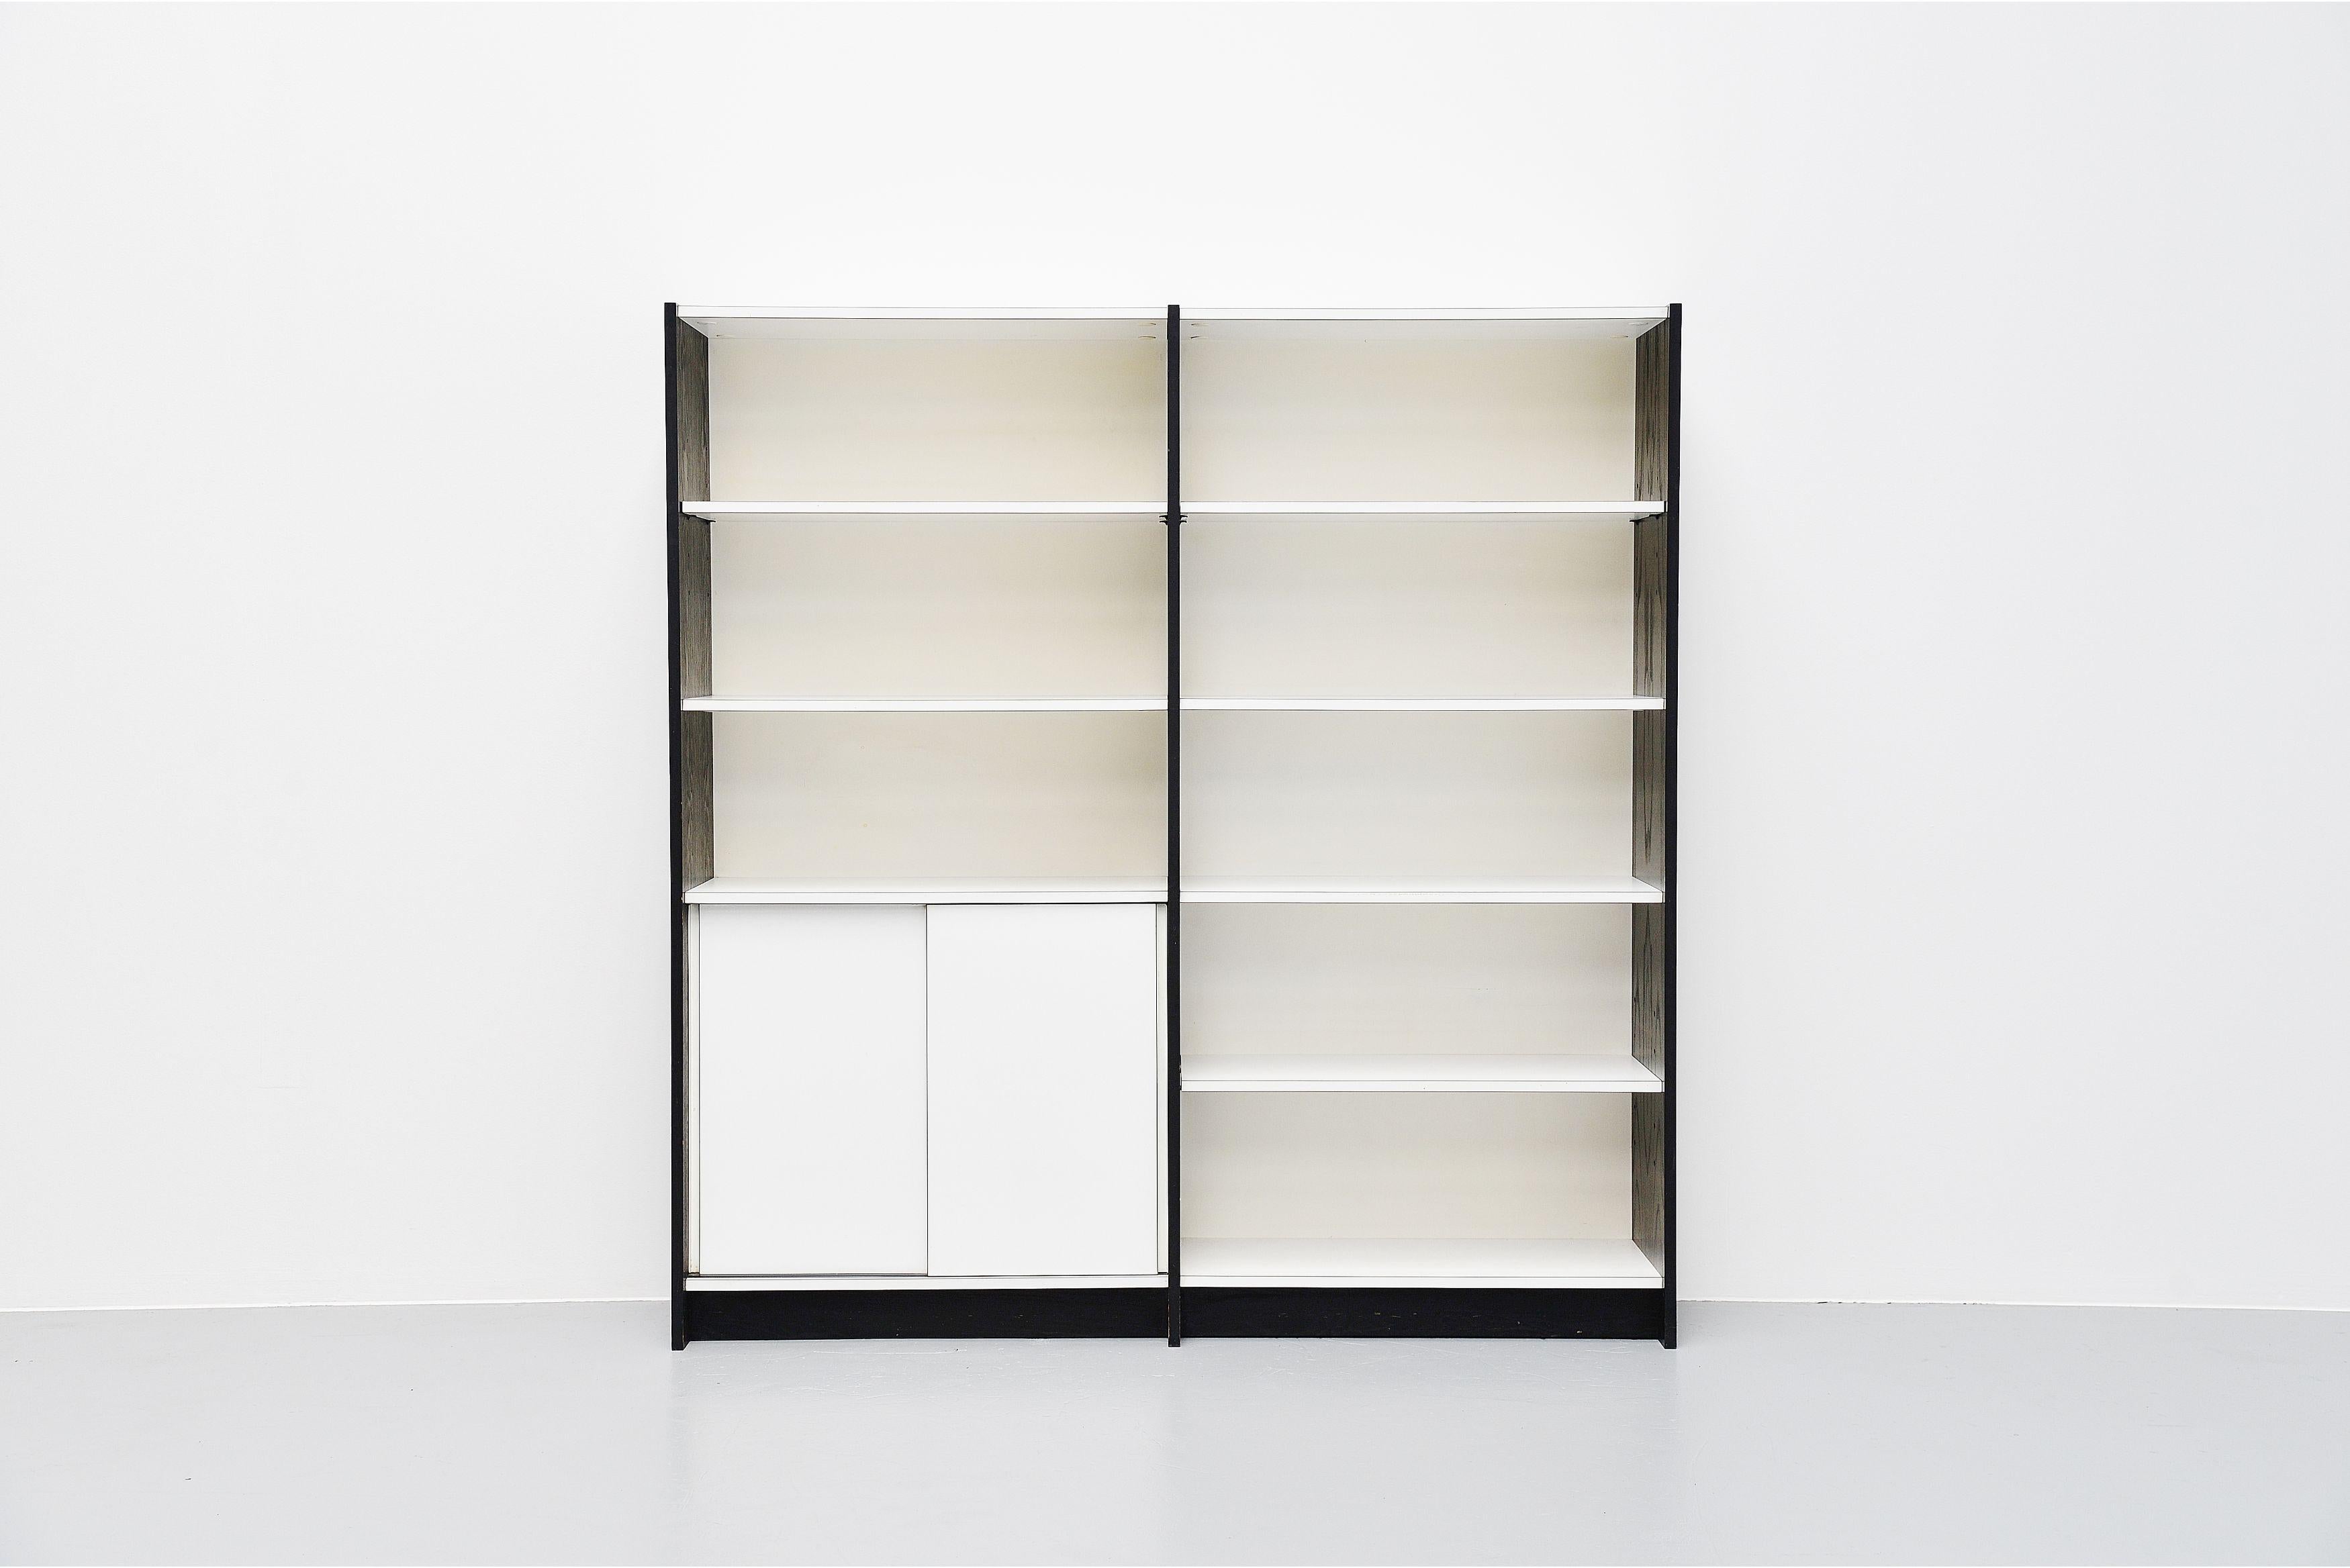 Très beau meuble bibliothèque moderniste modèle WW72 conçu par Martin Visser et fabriqué par 't Spectrum, Hollande, 1965. Ce meuble comporte des panneaux latéraux en bois noir ébonisé et des étagères et portes coulissantes en stratifié blanc. Très